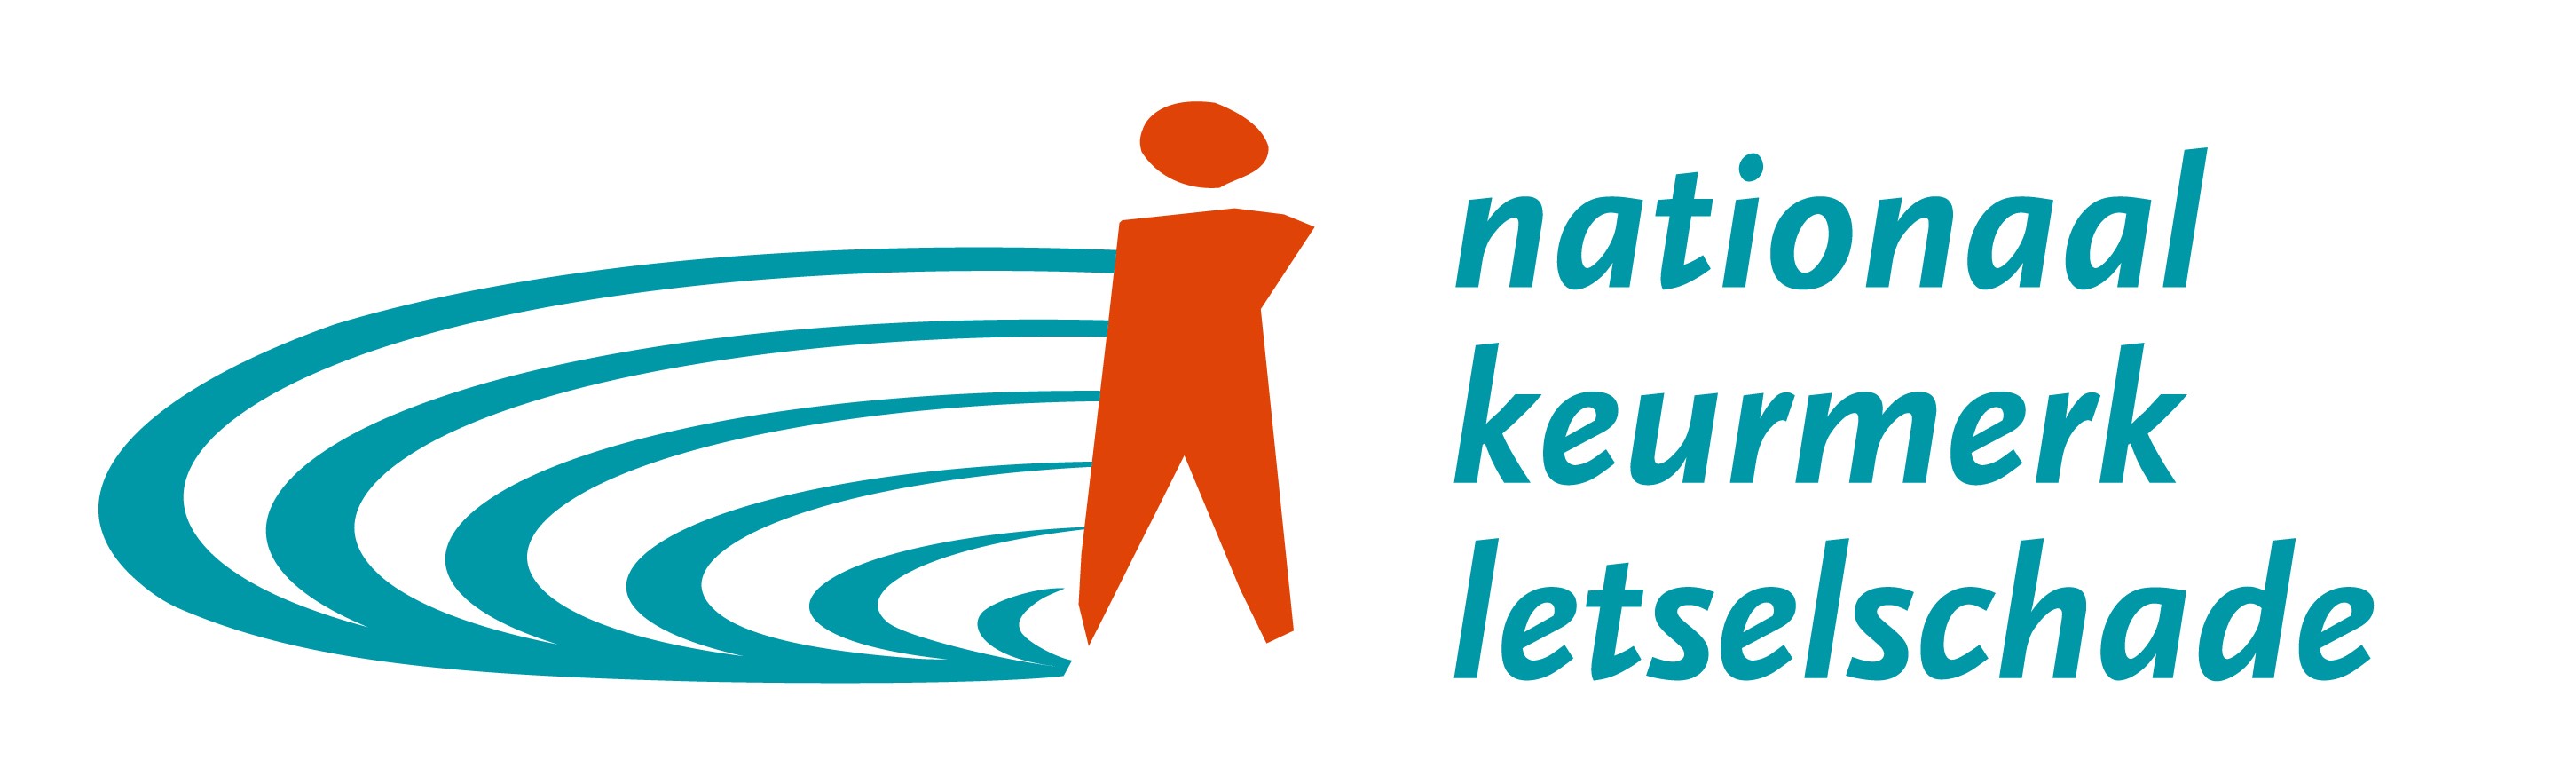 logo_nationaal_keurmerk_letselschade-2020_staand-def-outline